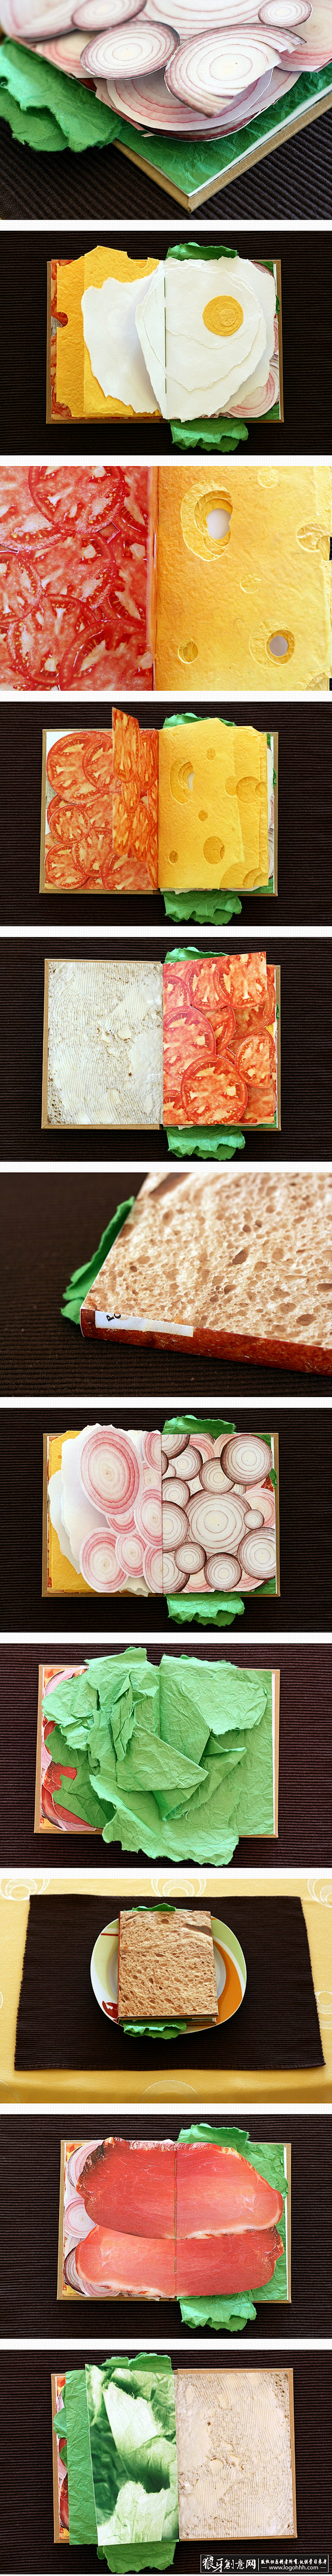 创意食品画册设计 三明治画册 西式餐饮画...